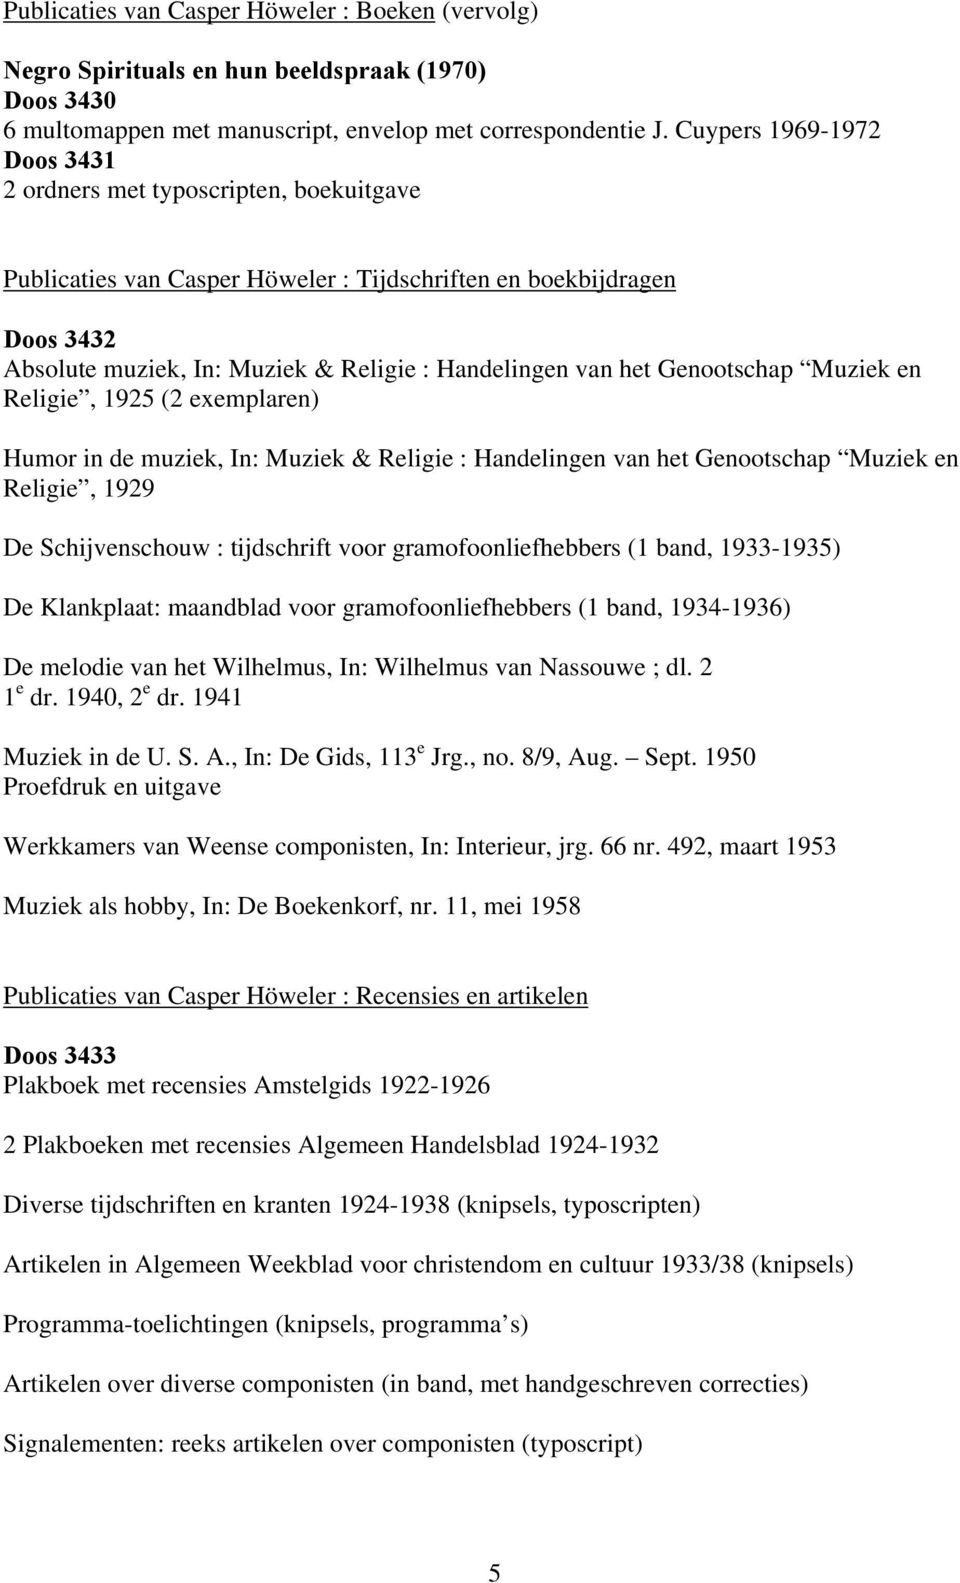 het Genootschap Muziek en Religie, 1925 (2 exemplaren) Humor in de muziek, In: Muziek & Religie : Handelingen van het Genootschap Muziek en Religie, 1929 De Schijvenschouw : tijdschrift voor